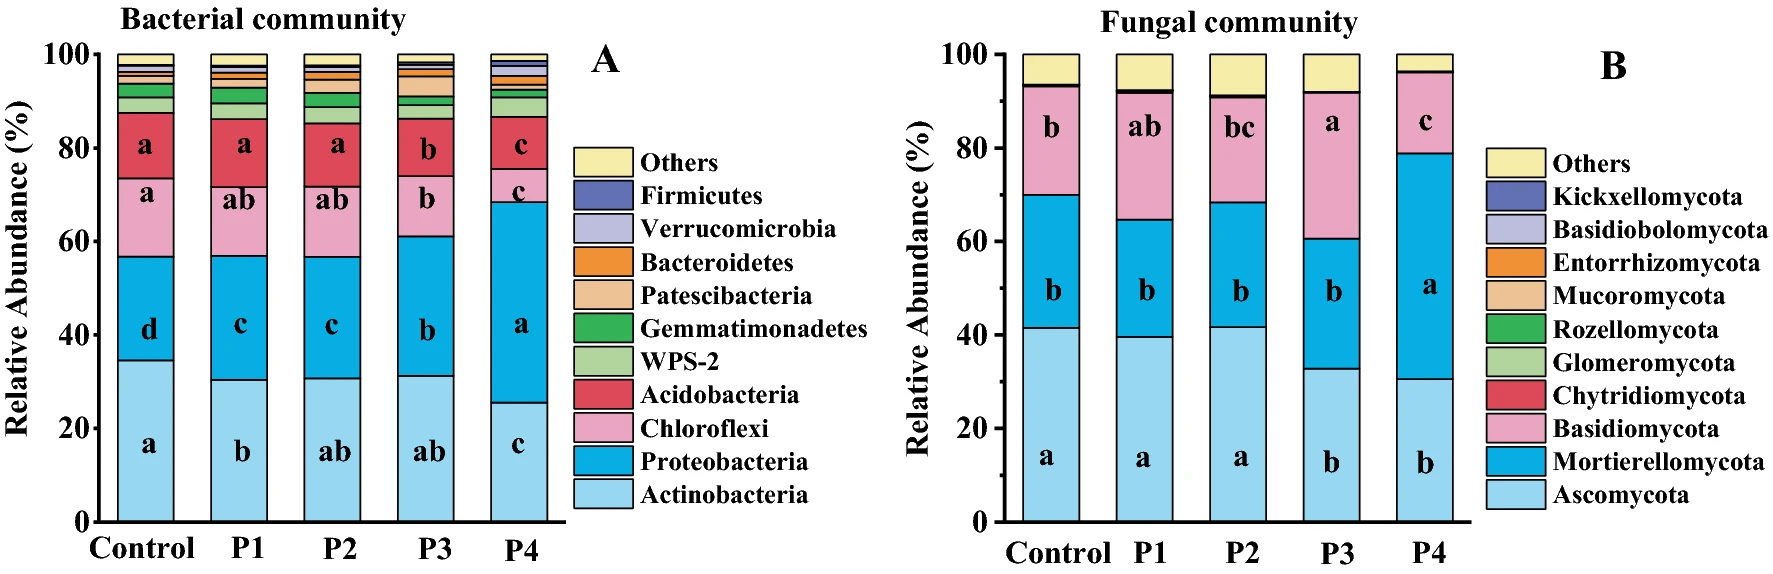 Efeito Do Fosfogesso Na Abundância Relativa Dos Filos Das Comunidades Bacterianas (A) E Fúngicas (B)